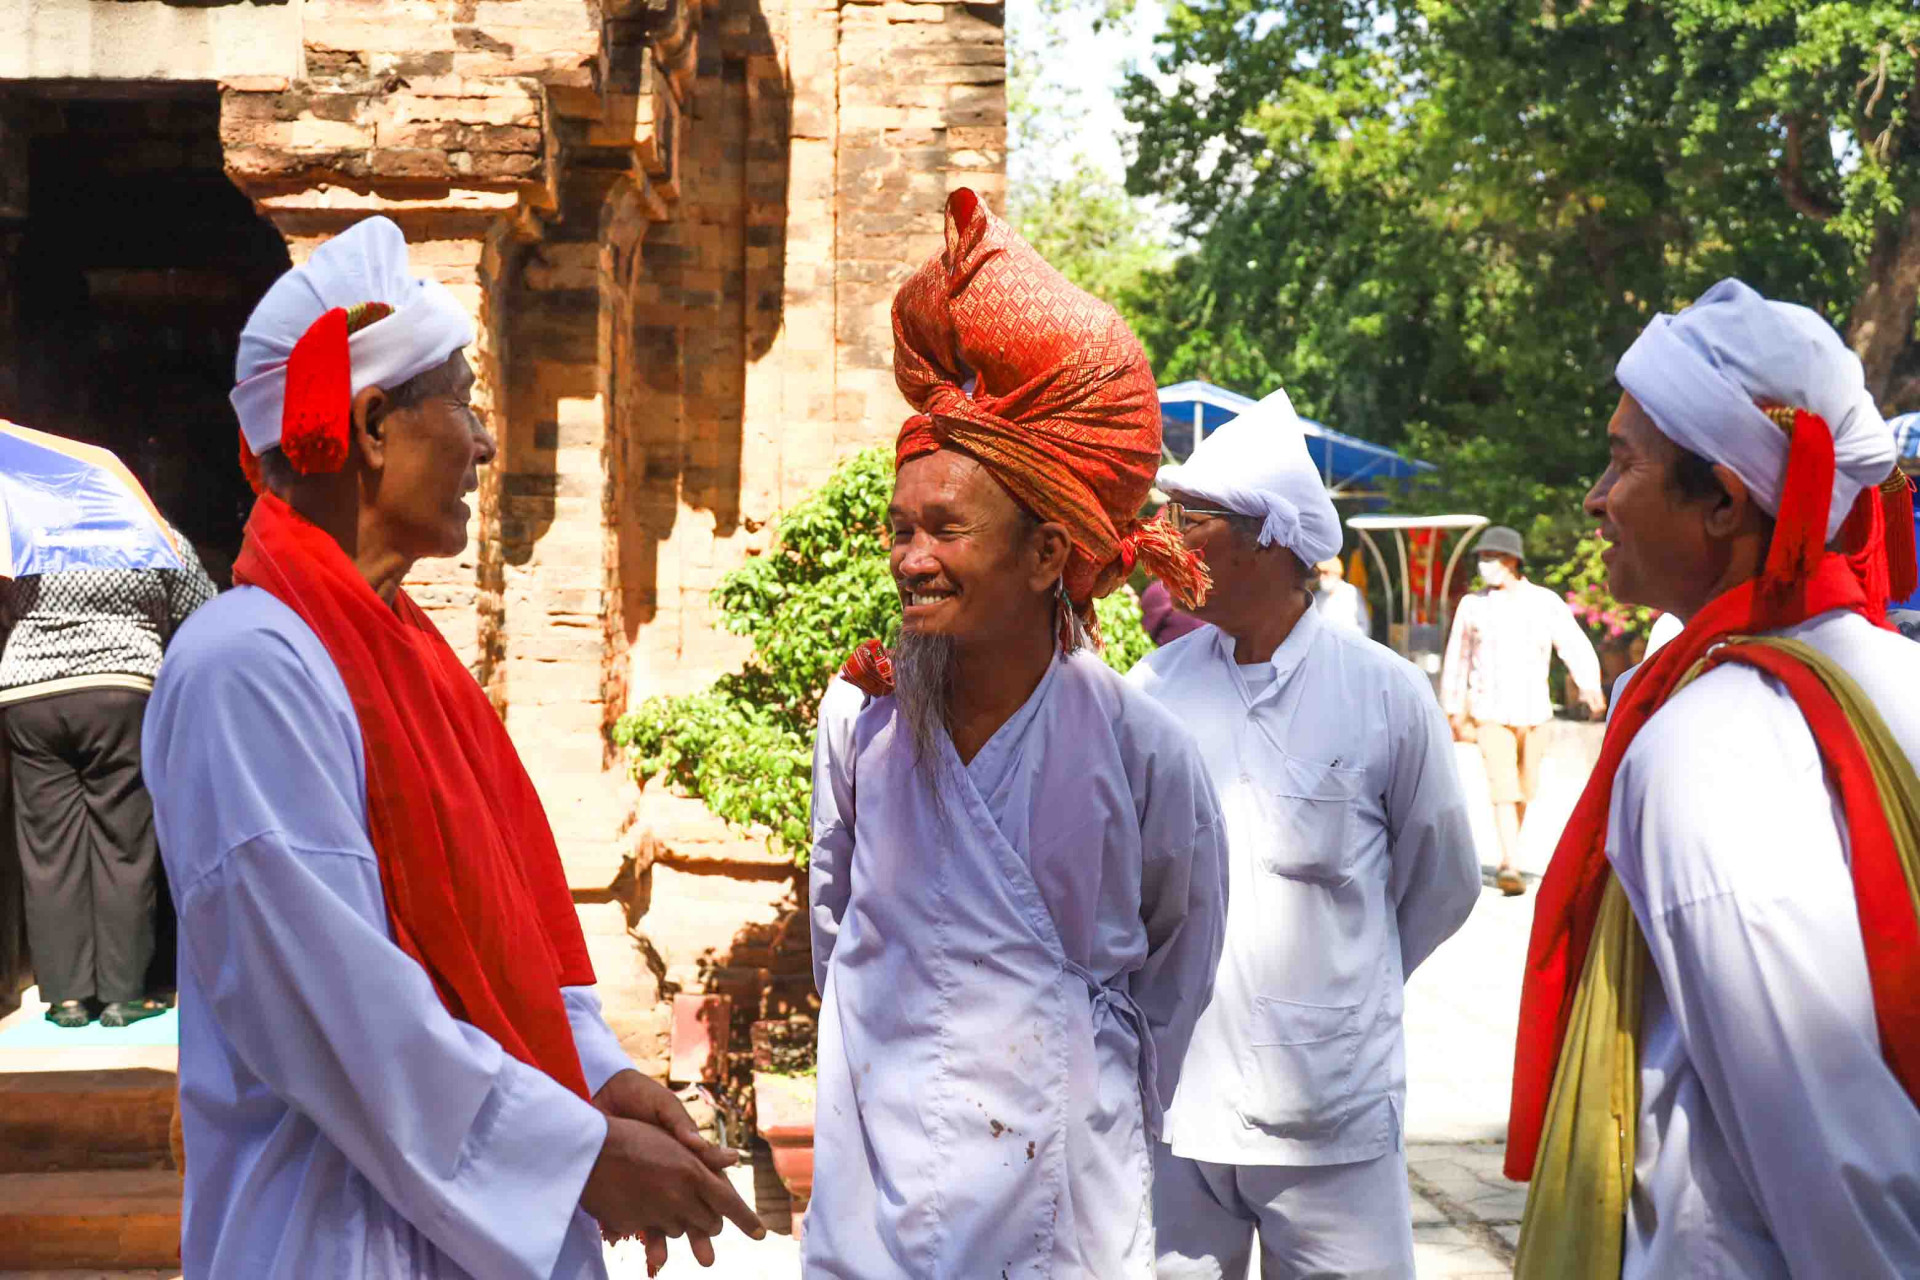 Cham holy men attending the festival